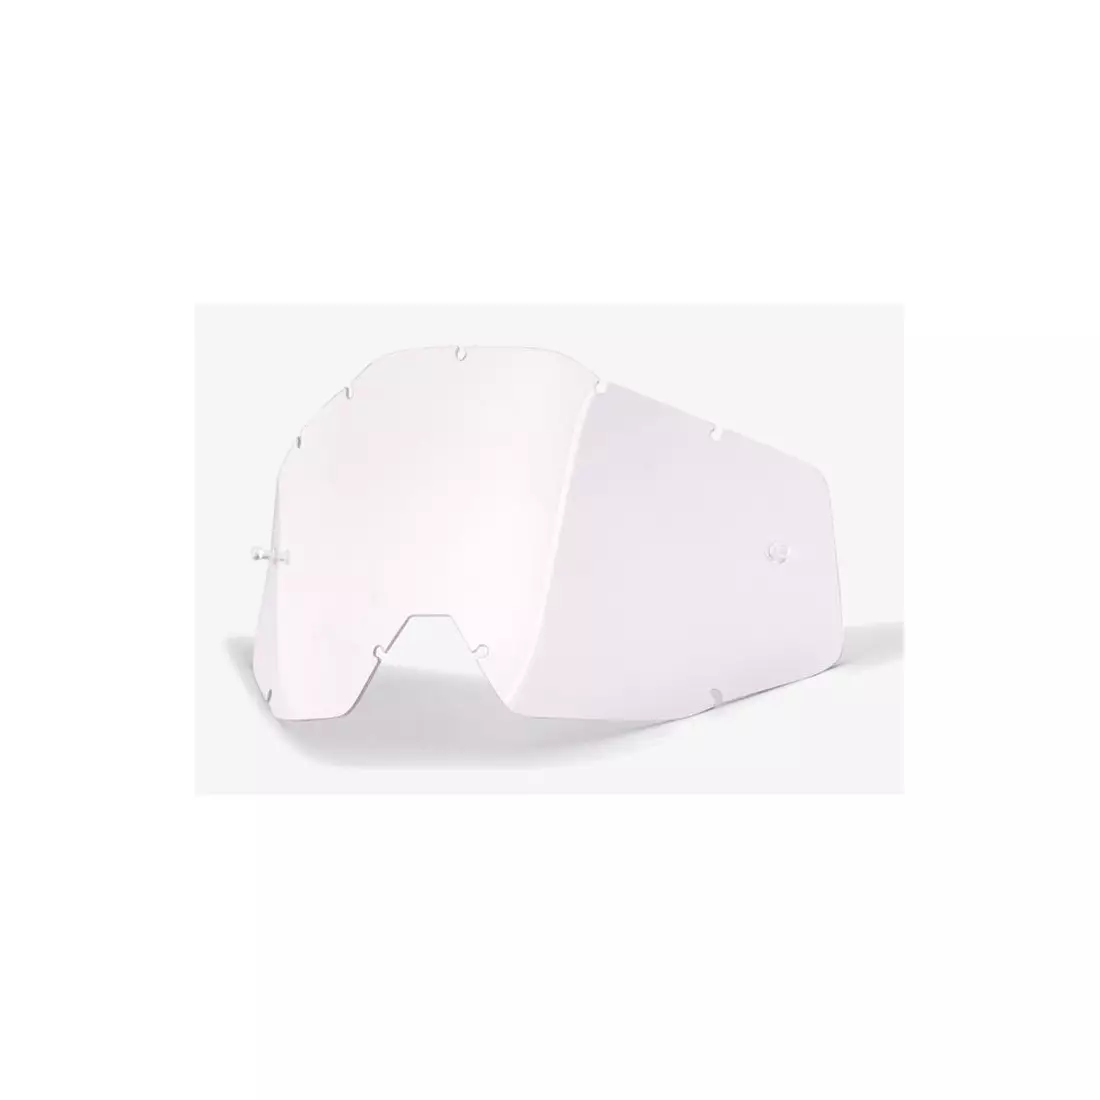 100% sticlă pentru ochelari de protecție  accuri/strata junior (sticlă transparentă Anti-Fog) STO-51003-010-02